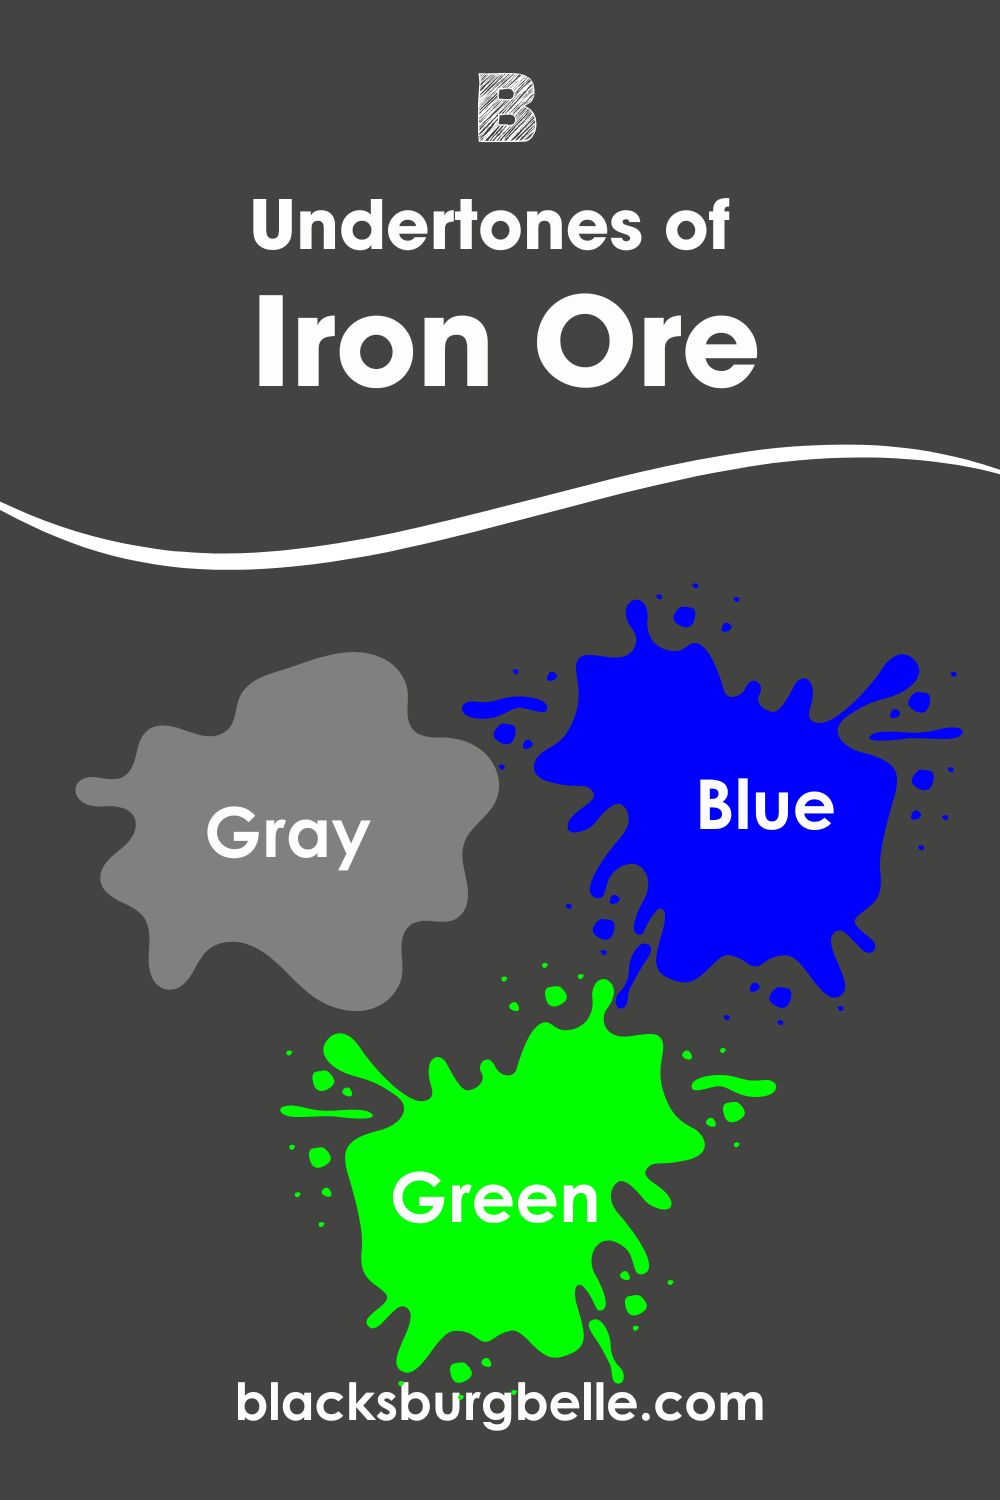 Undertones of Iron Ore